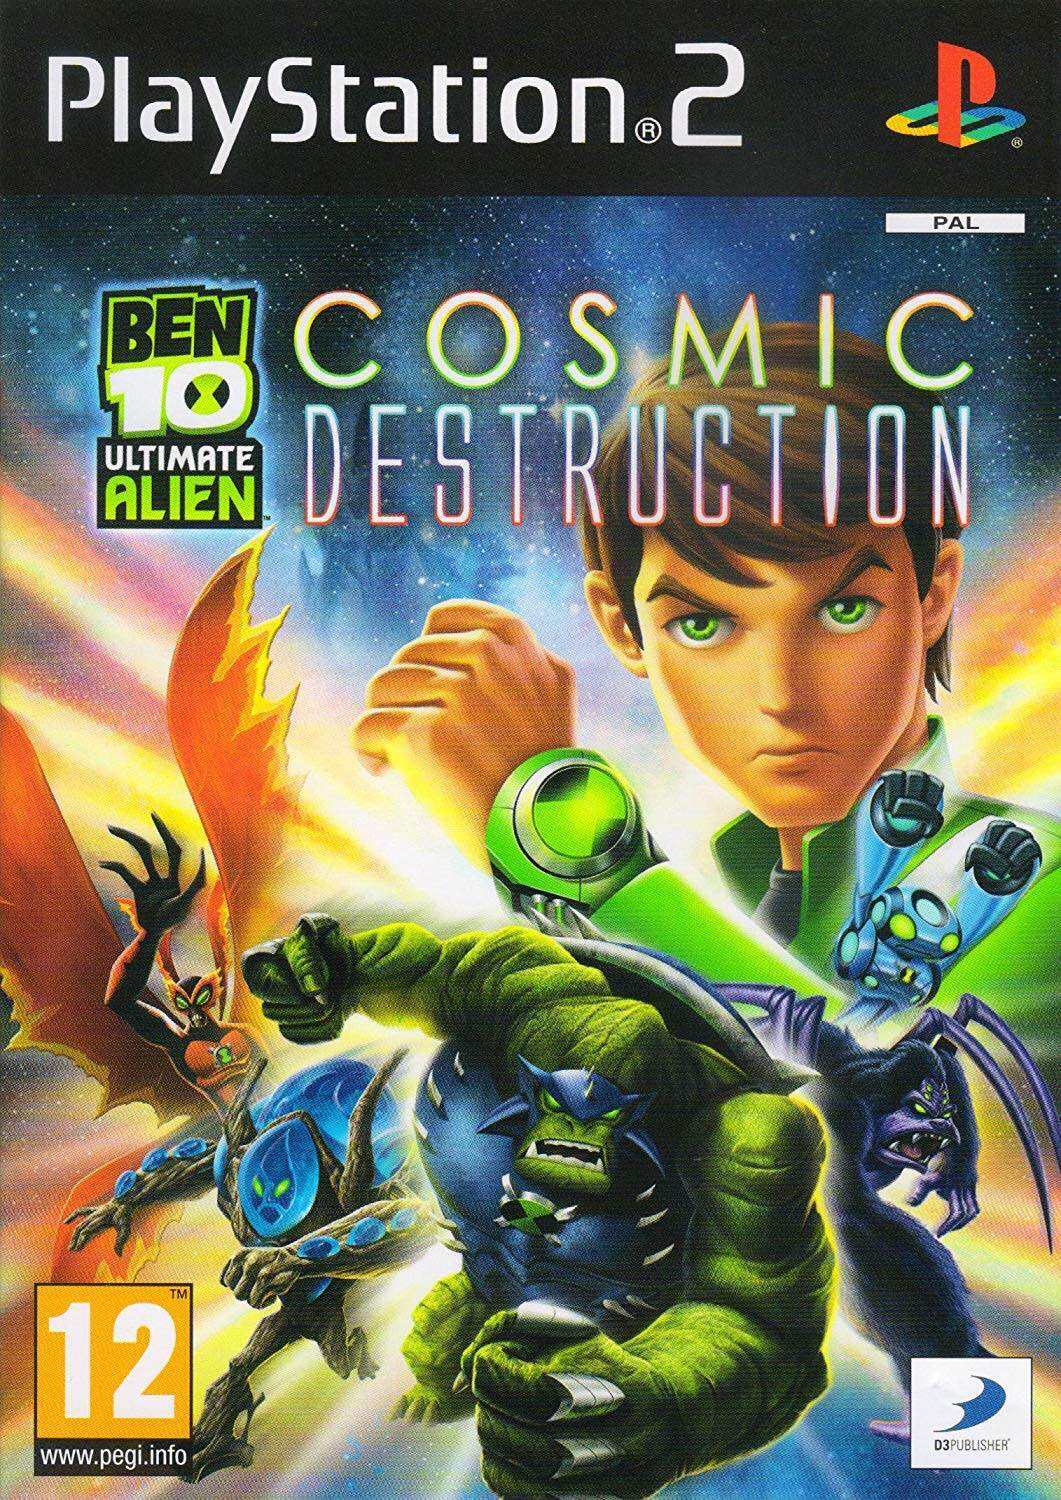 Ben 10 Ultimate Alien - Cosmic Destruction